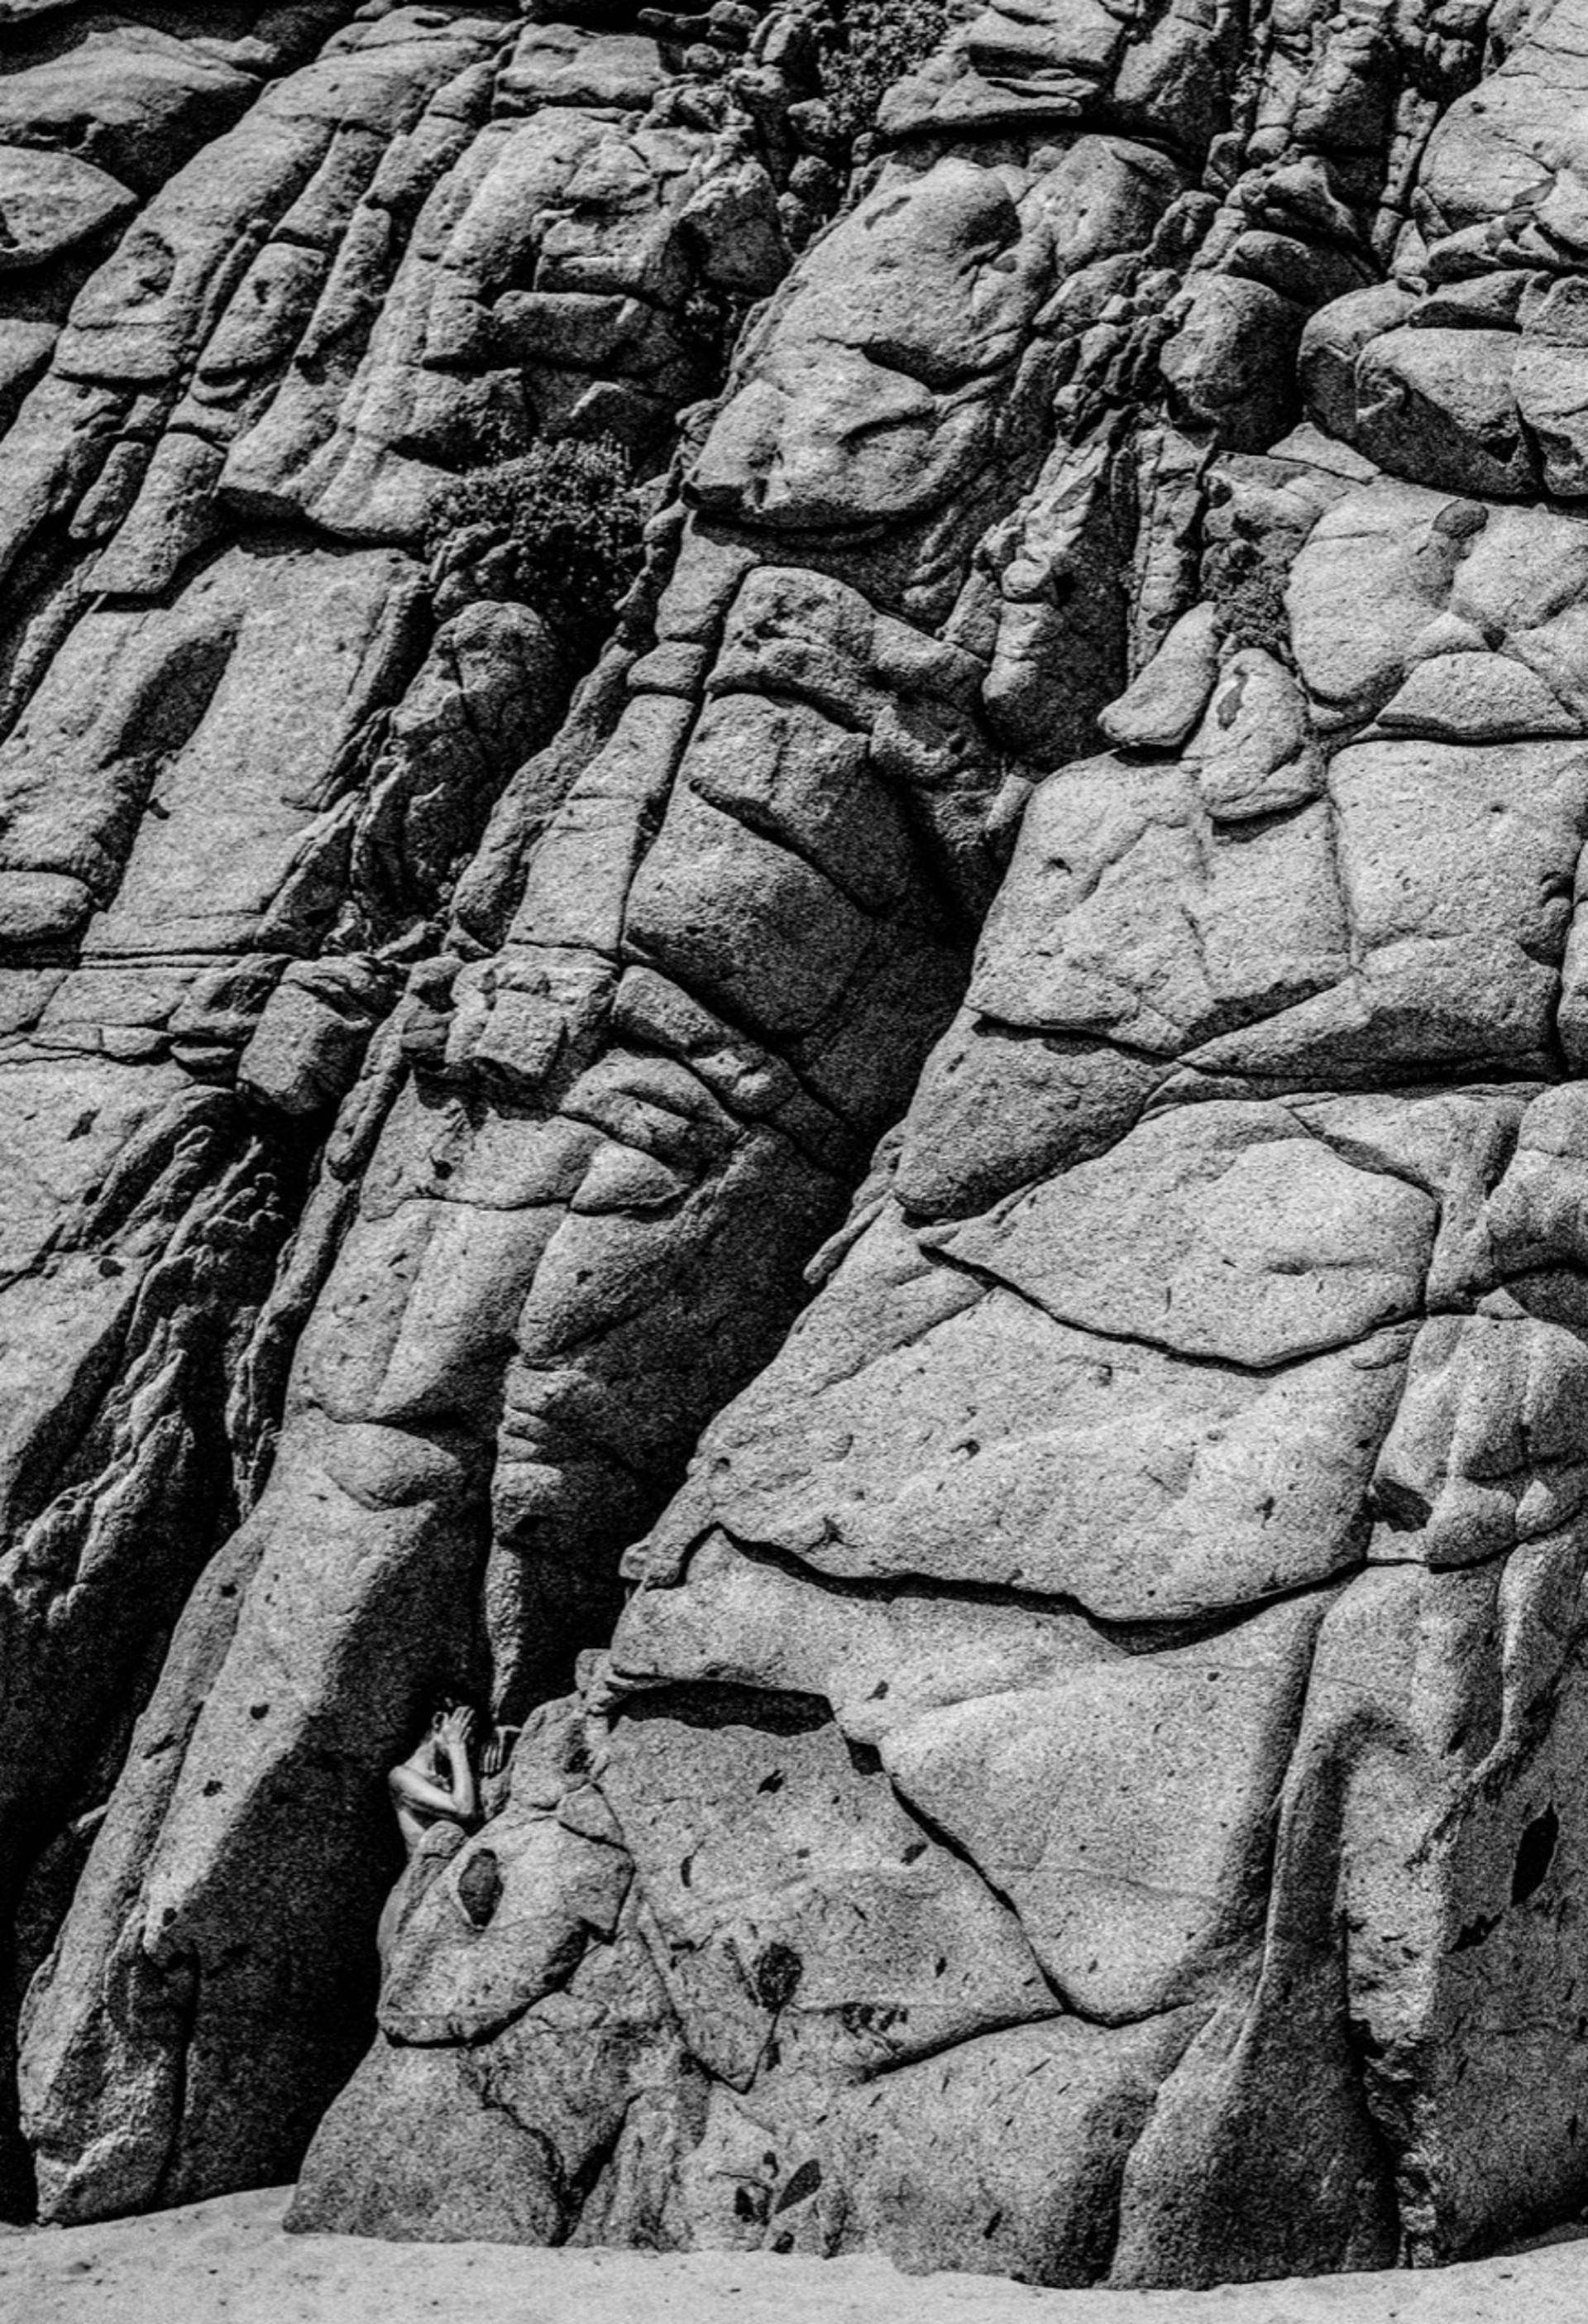 On The Rocks Bashful by Rob Brinson